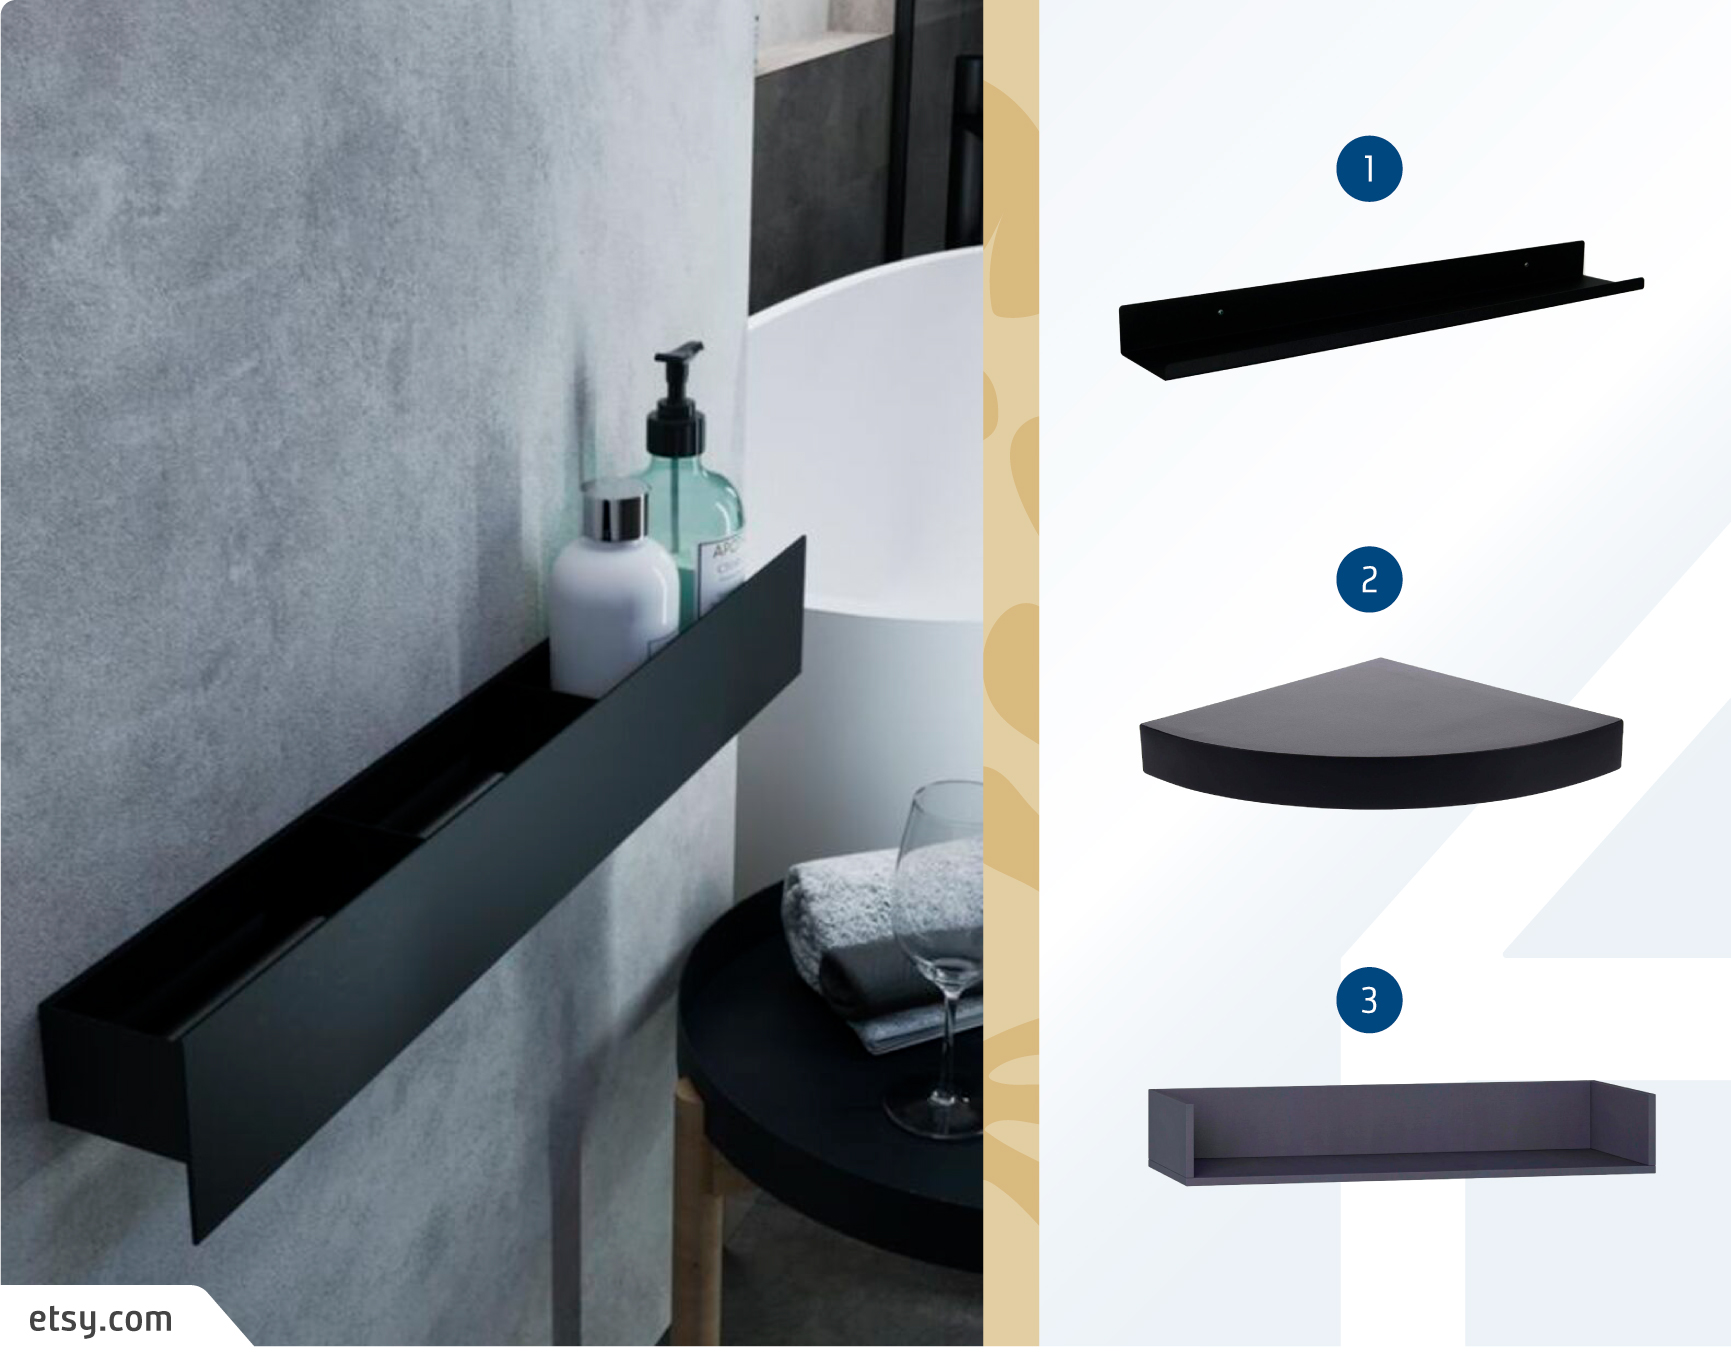 Moodboard de repisas minimali negras disponibles en Sodimac, junto a una foto detalle de un baño con una repisa negra y productos higiénicos.